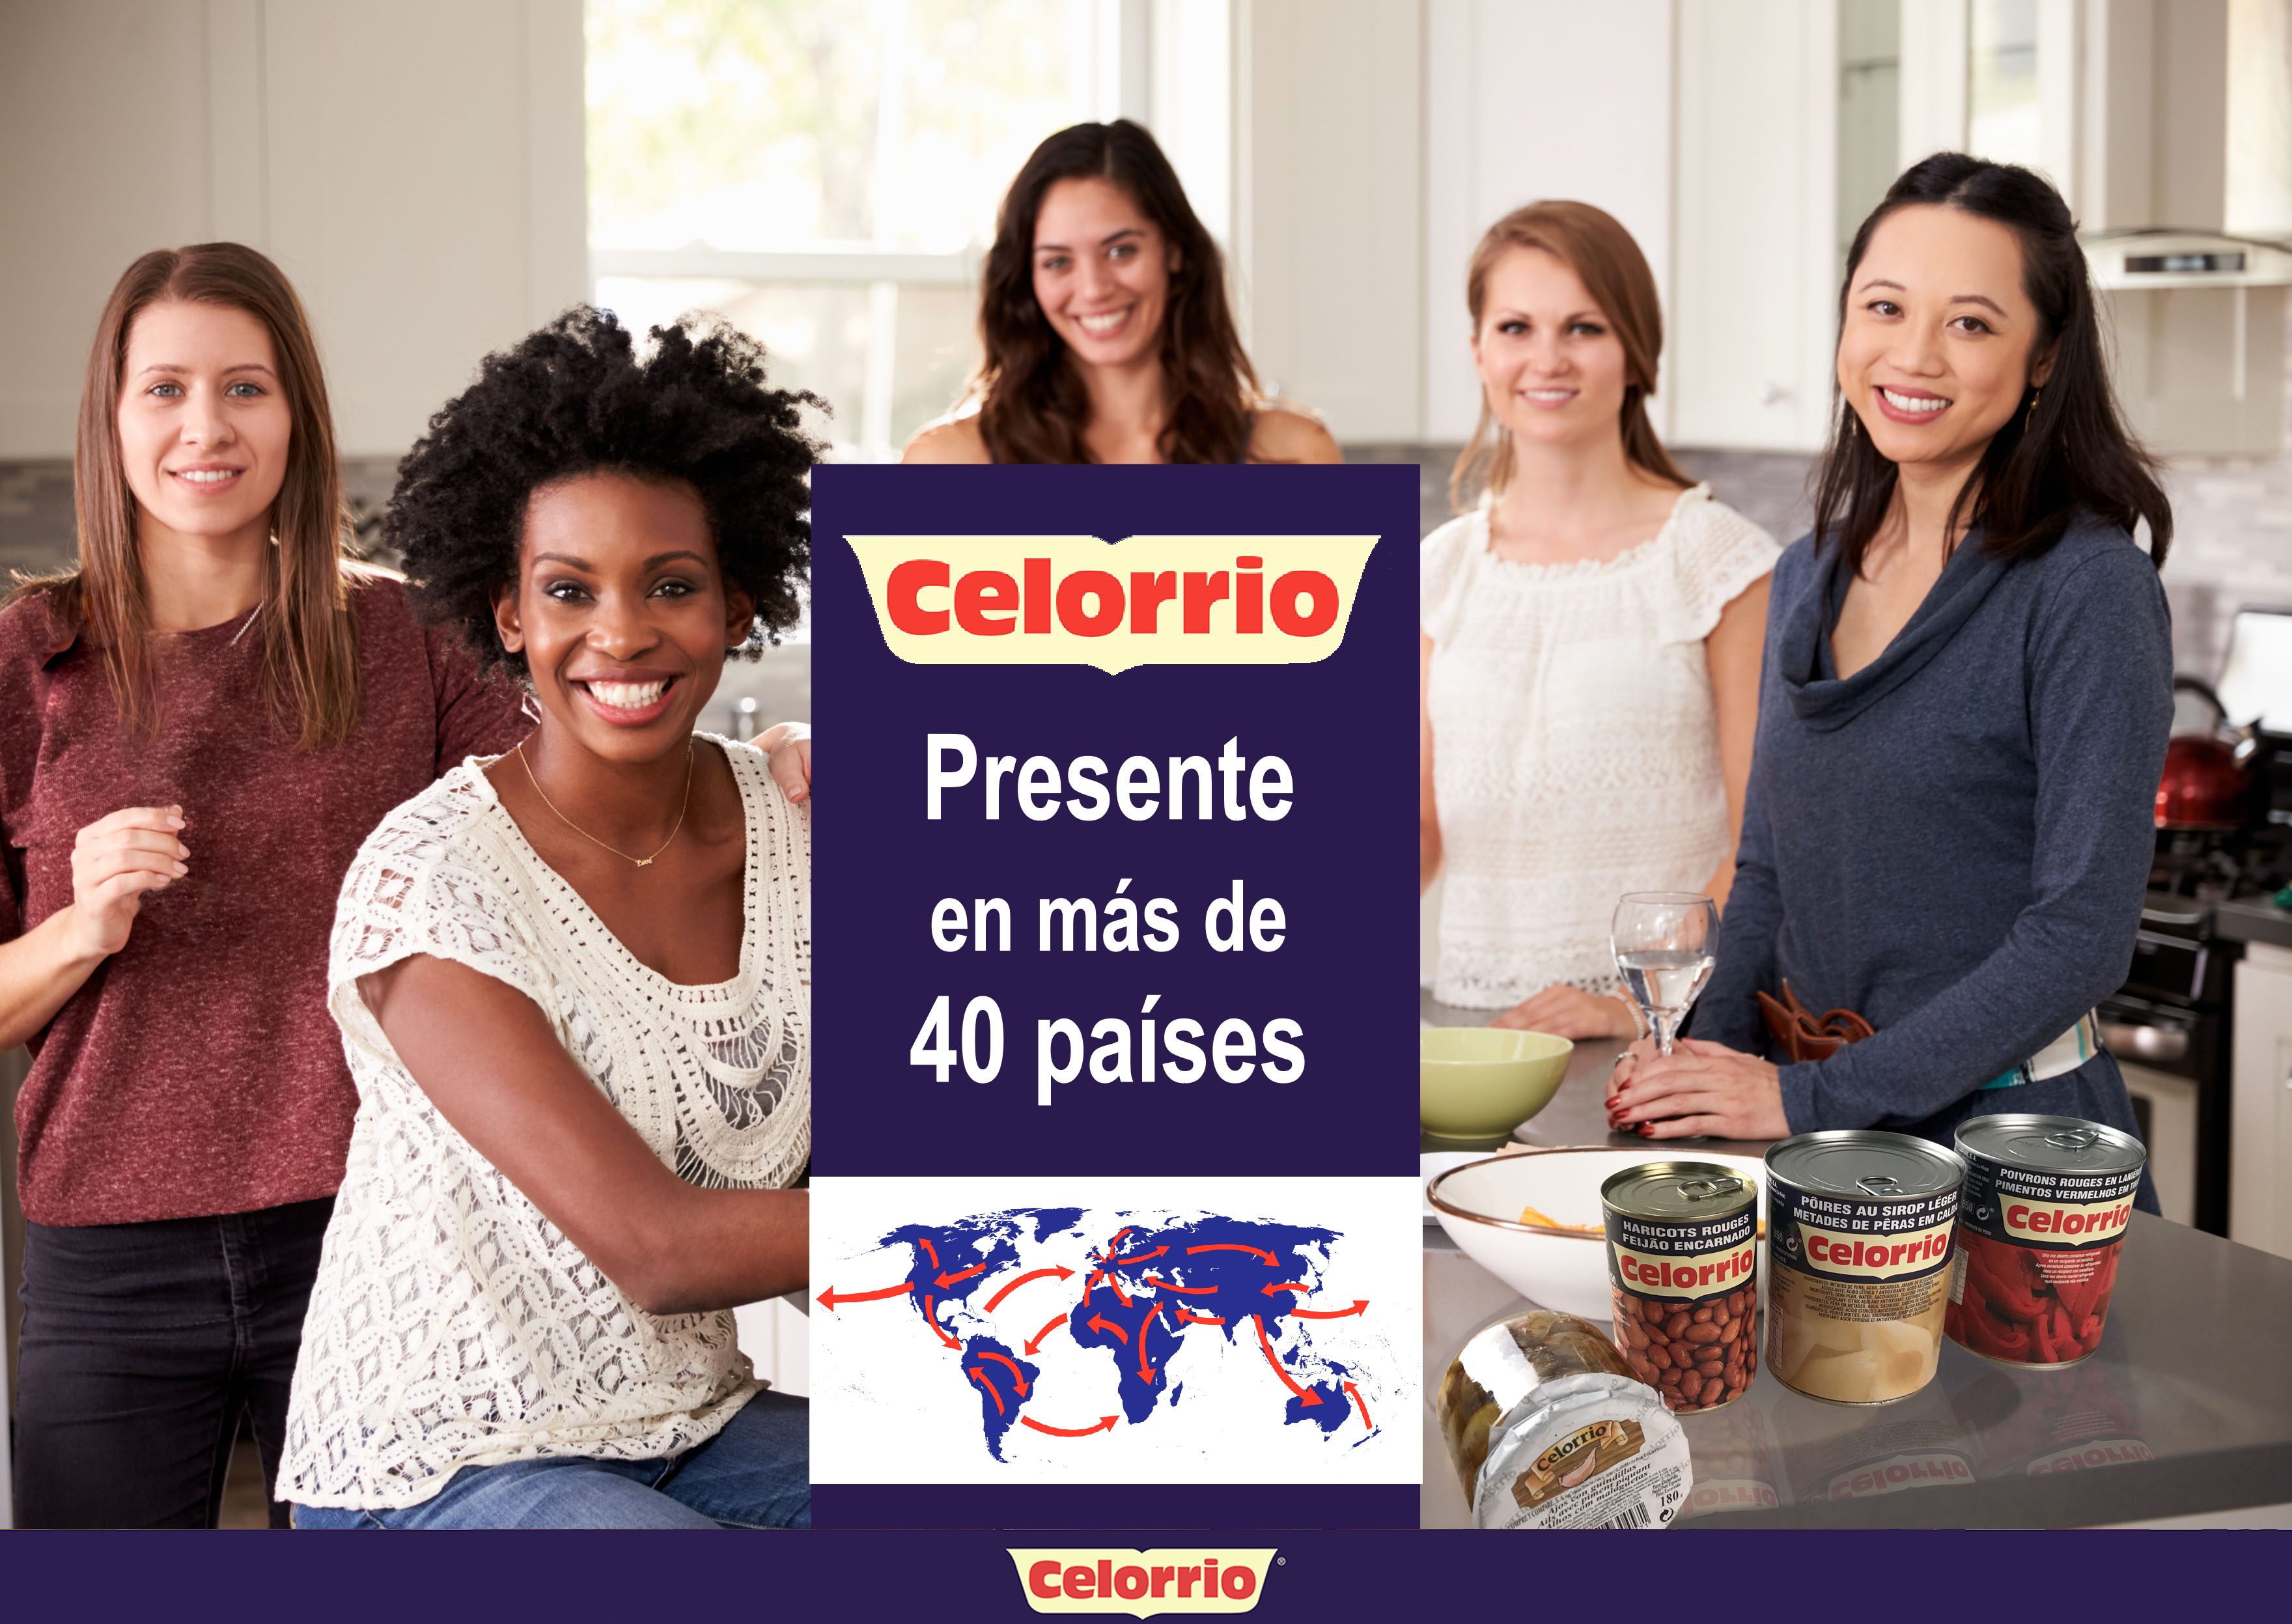 Au-delà des frontières nationales: Grupo Celorrio atteint près de 40 pays